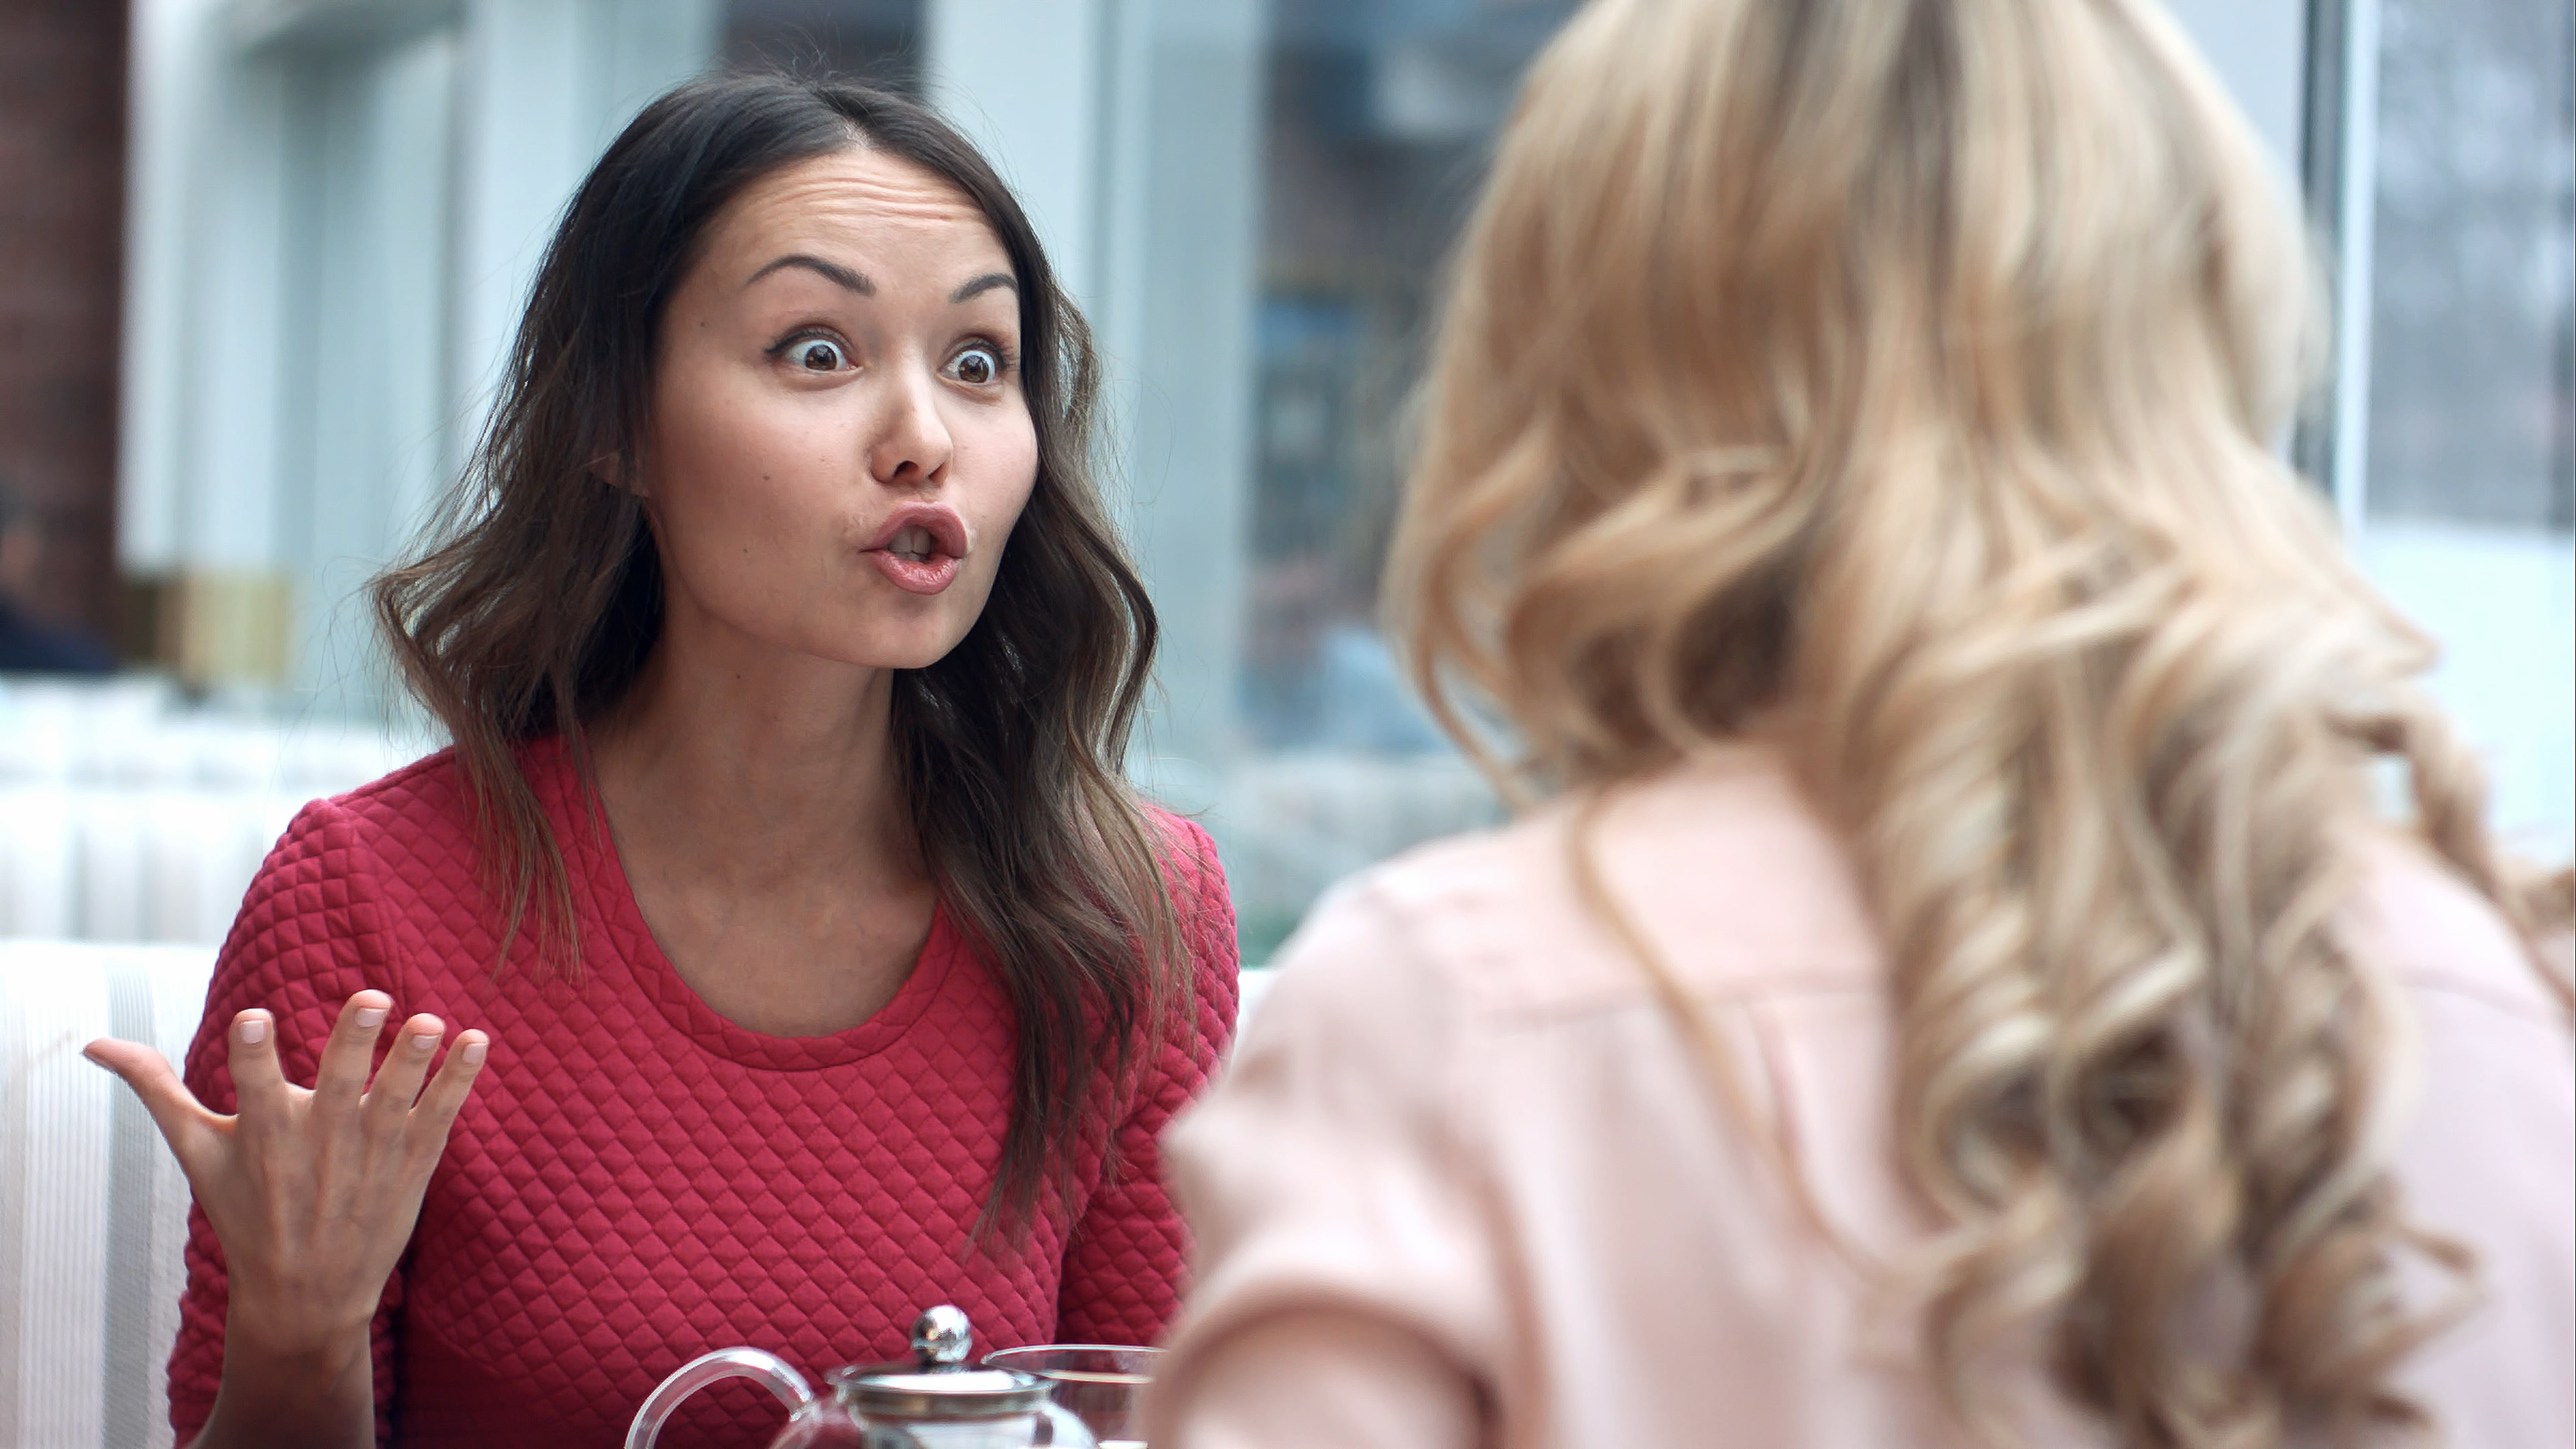 Zwei junge Frauen streiten sich in einem Restaurant | Quelle: Shutterstock